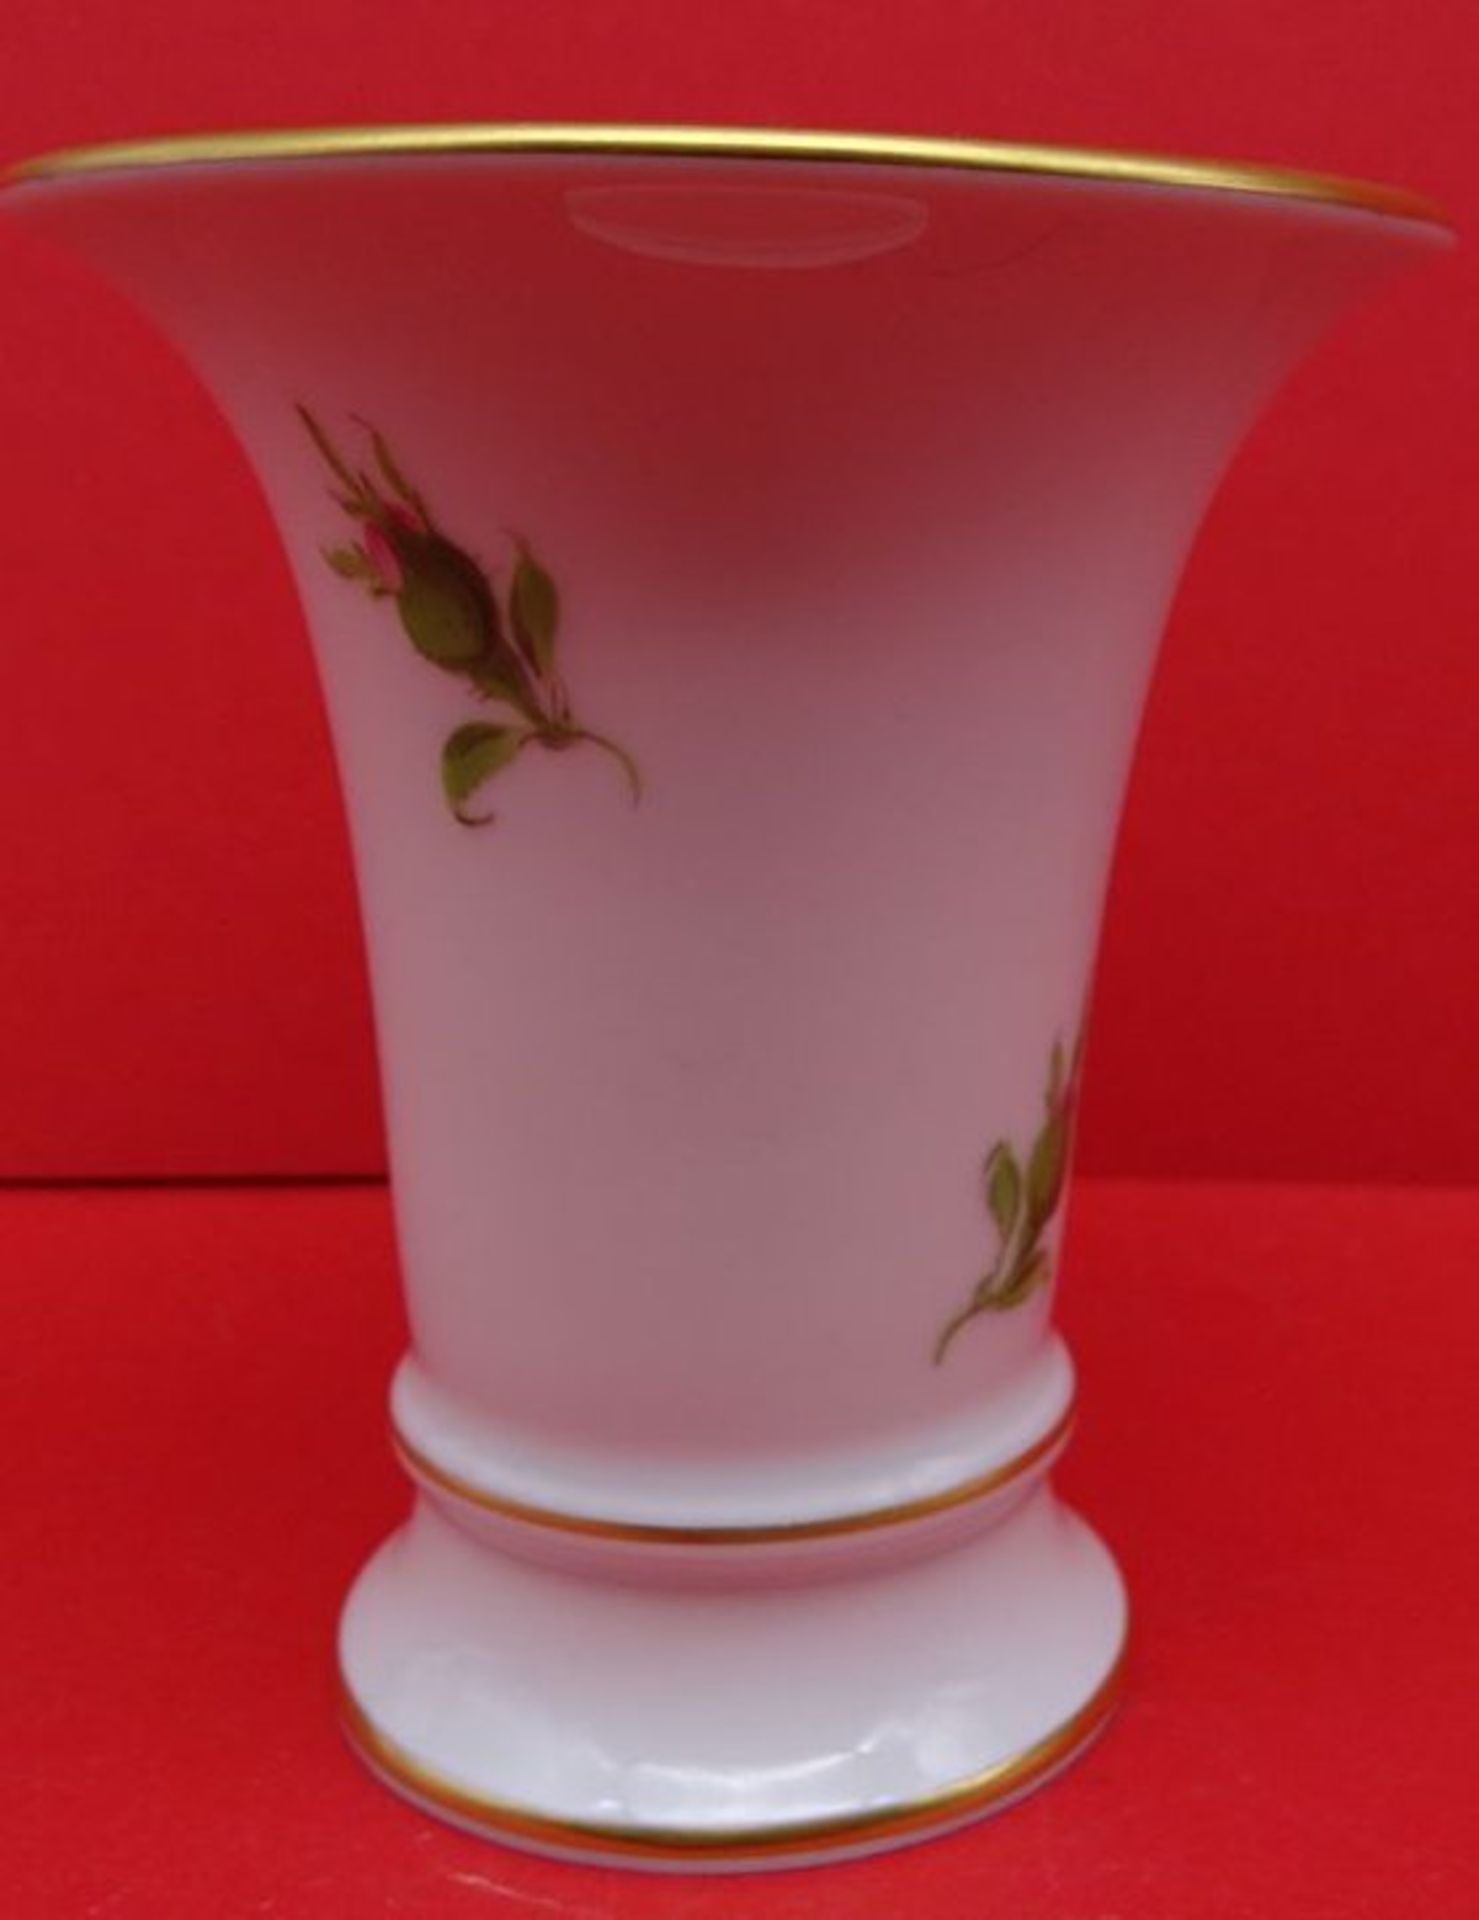 kl. Vase "Meissen" Rote Rose, 1.Wahl, H-9,5 cm - Image 2 of 4